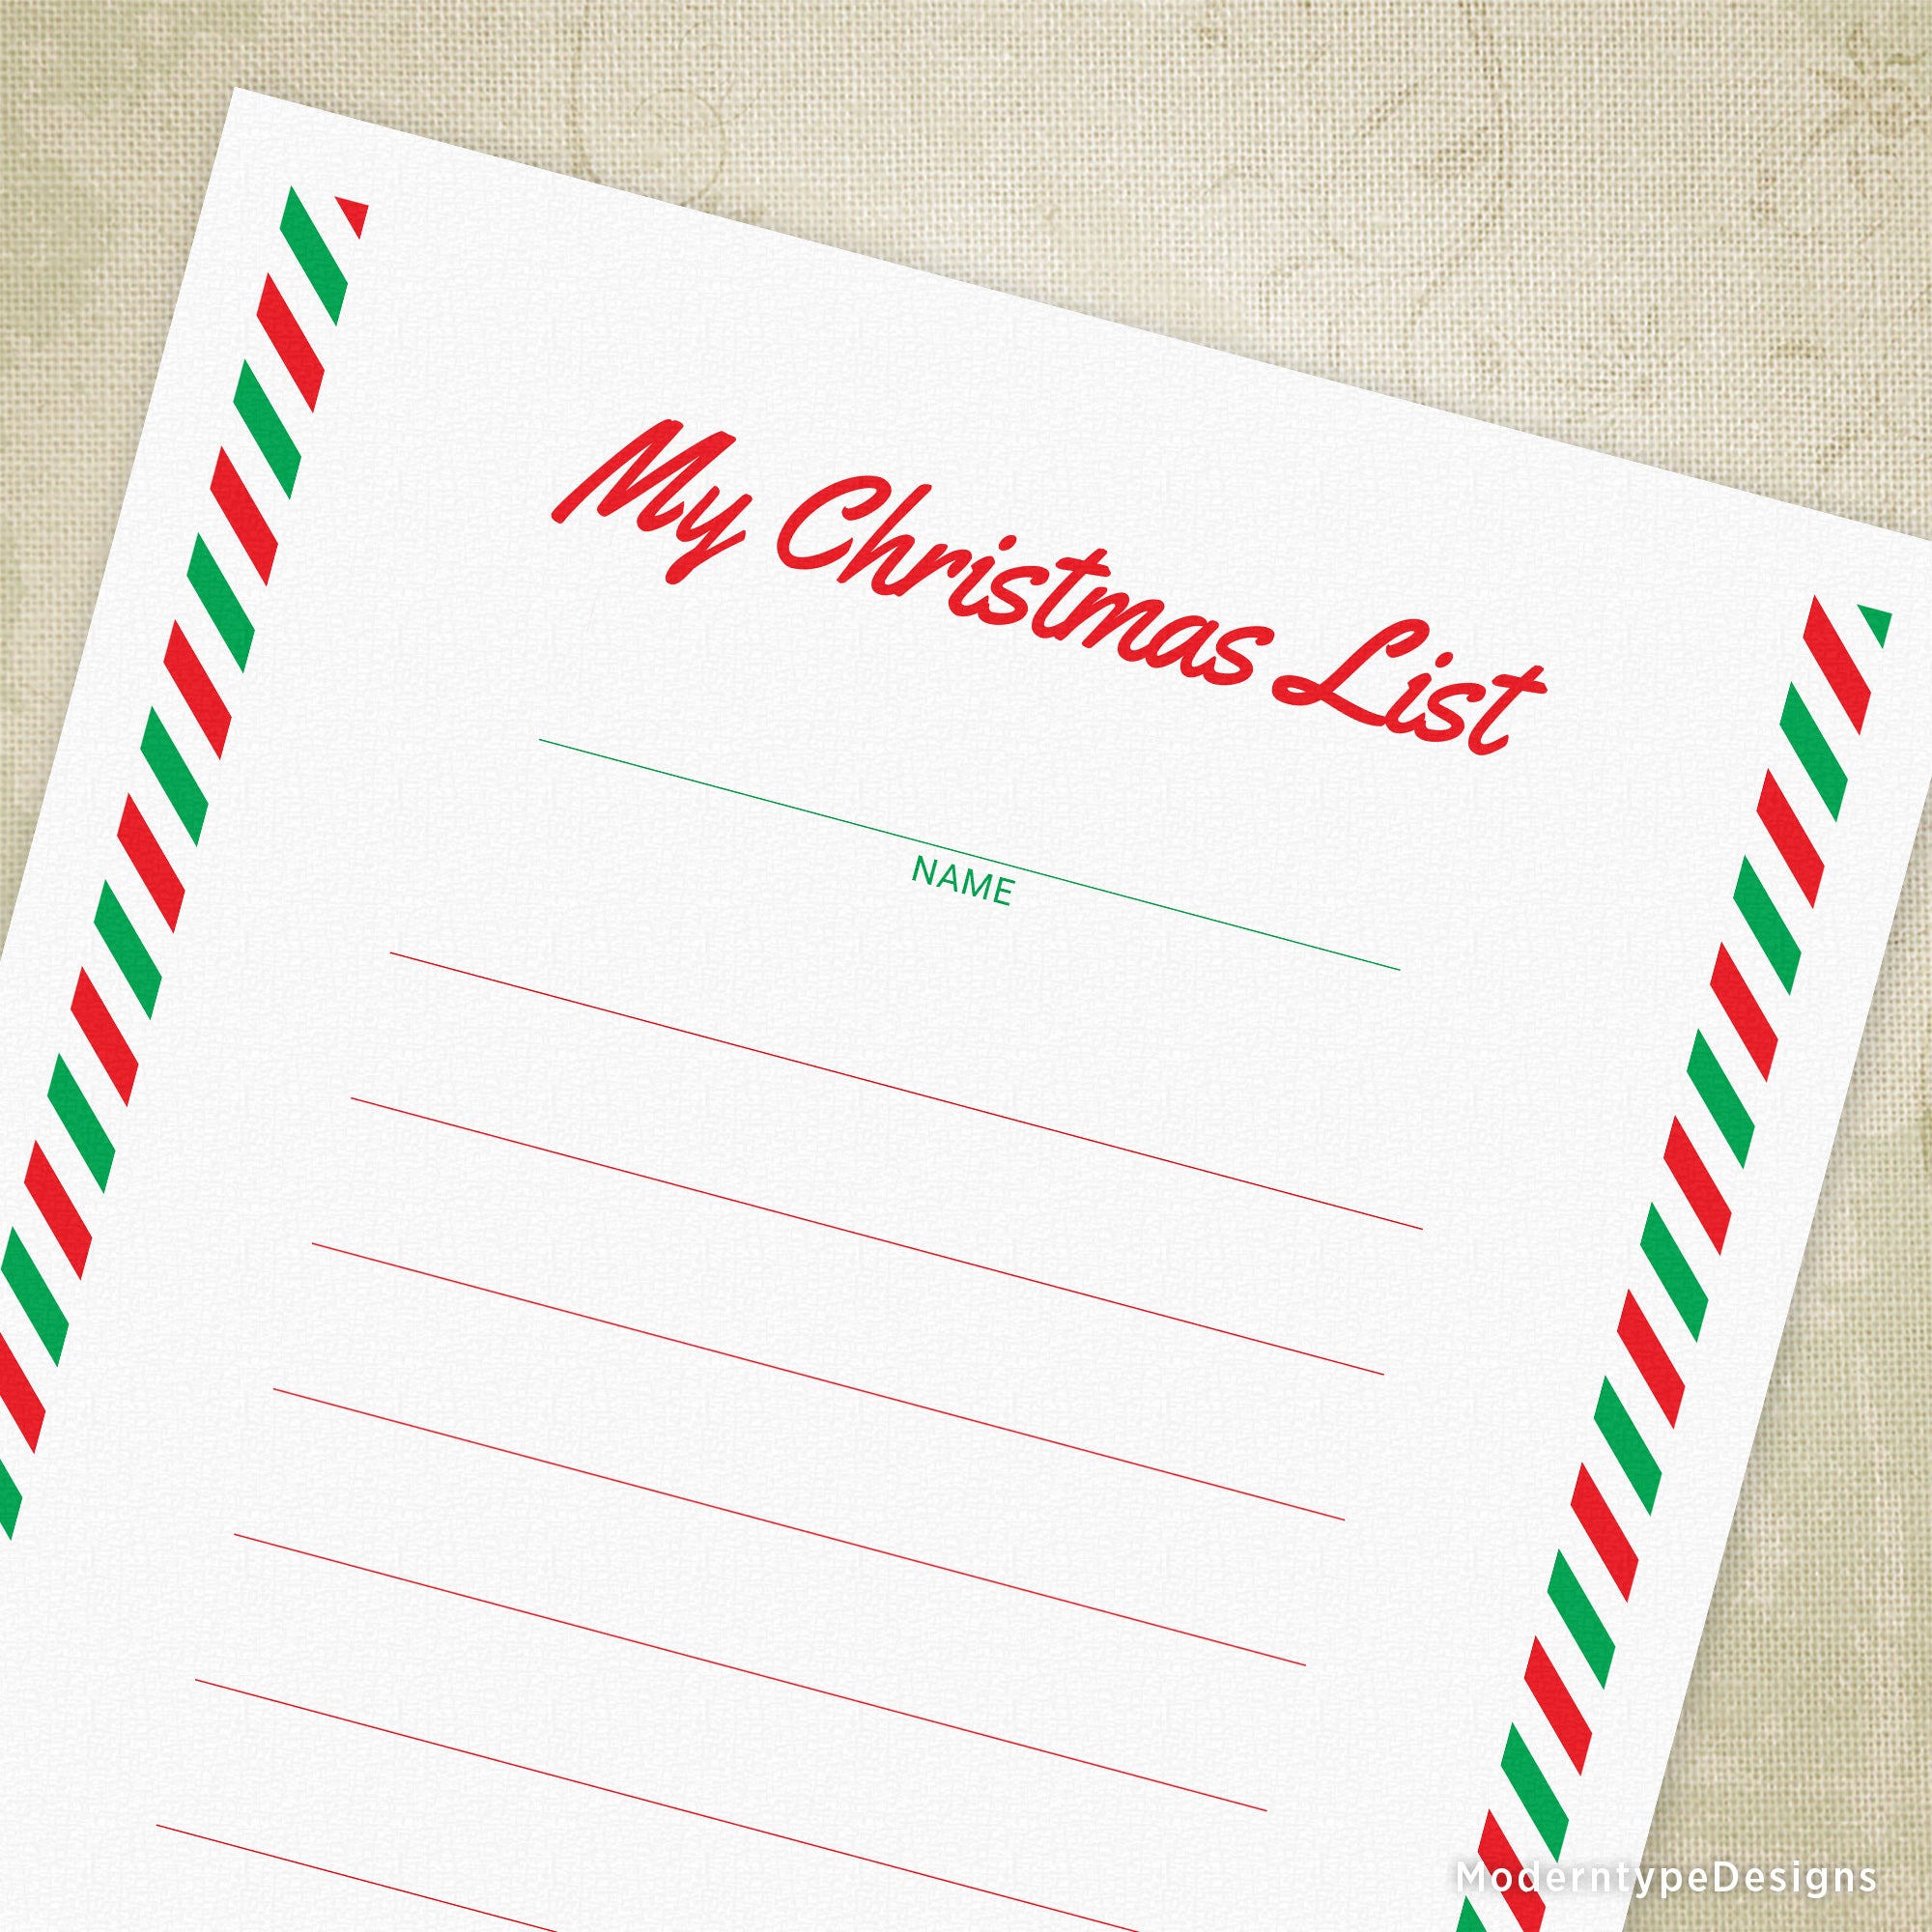 My Christmas List Printable